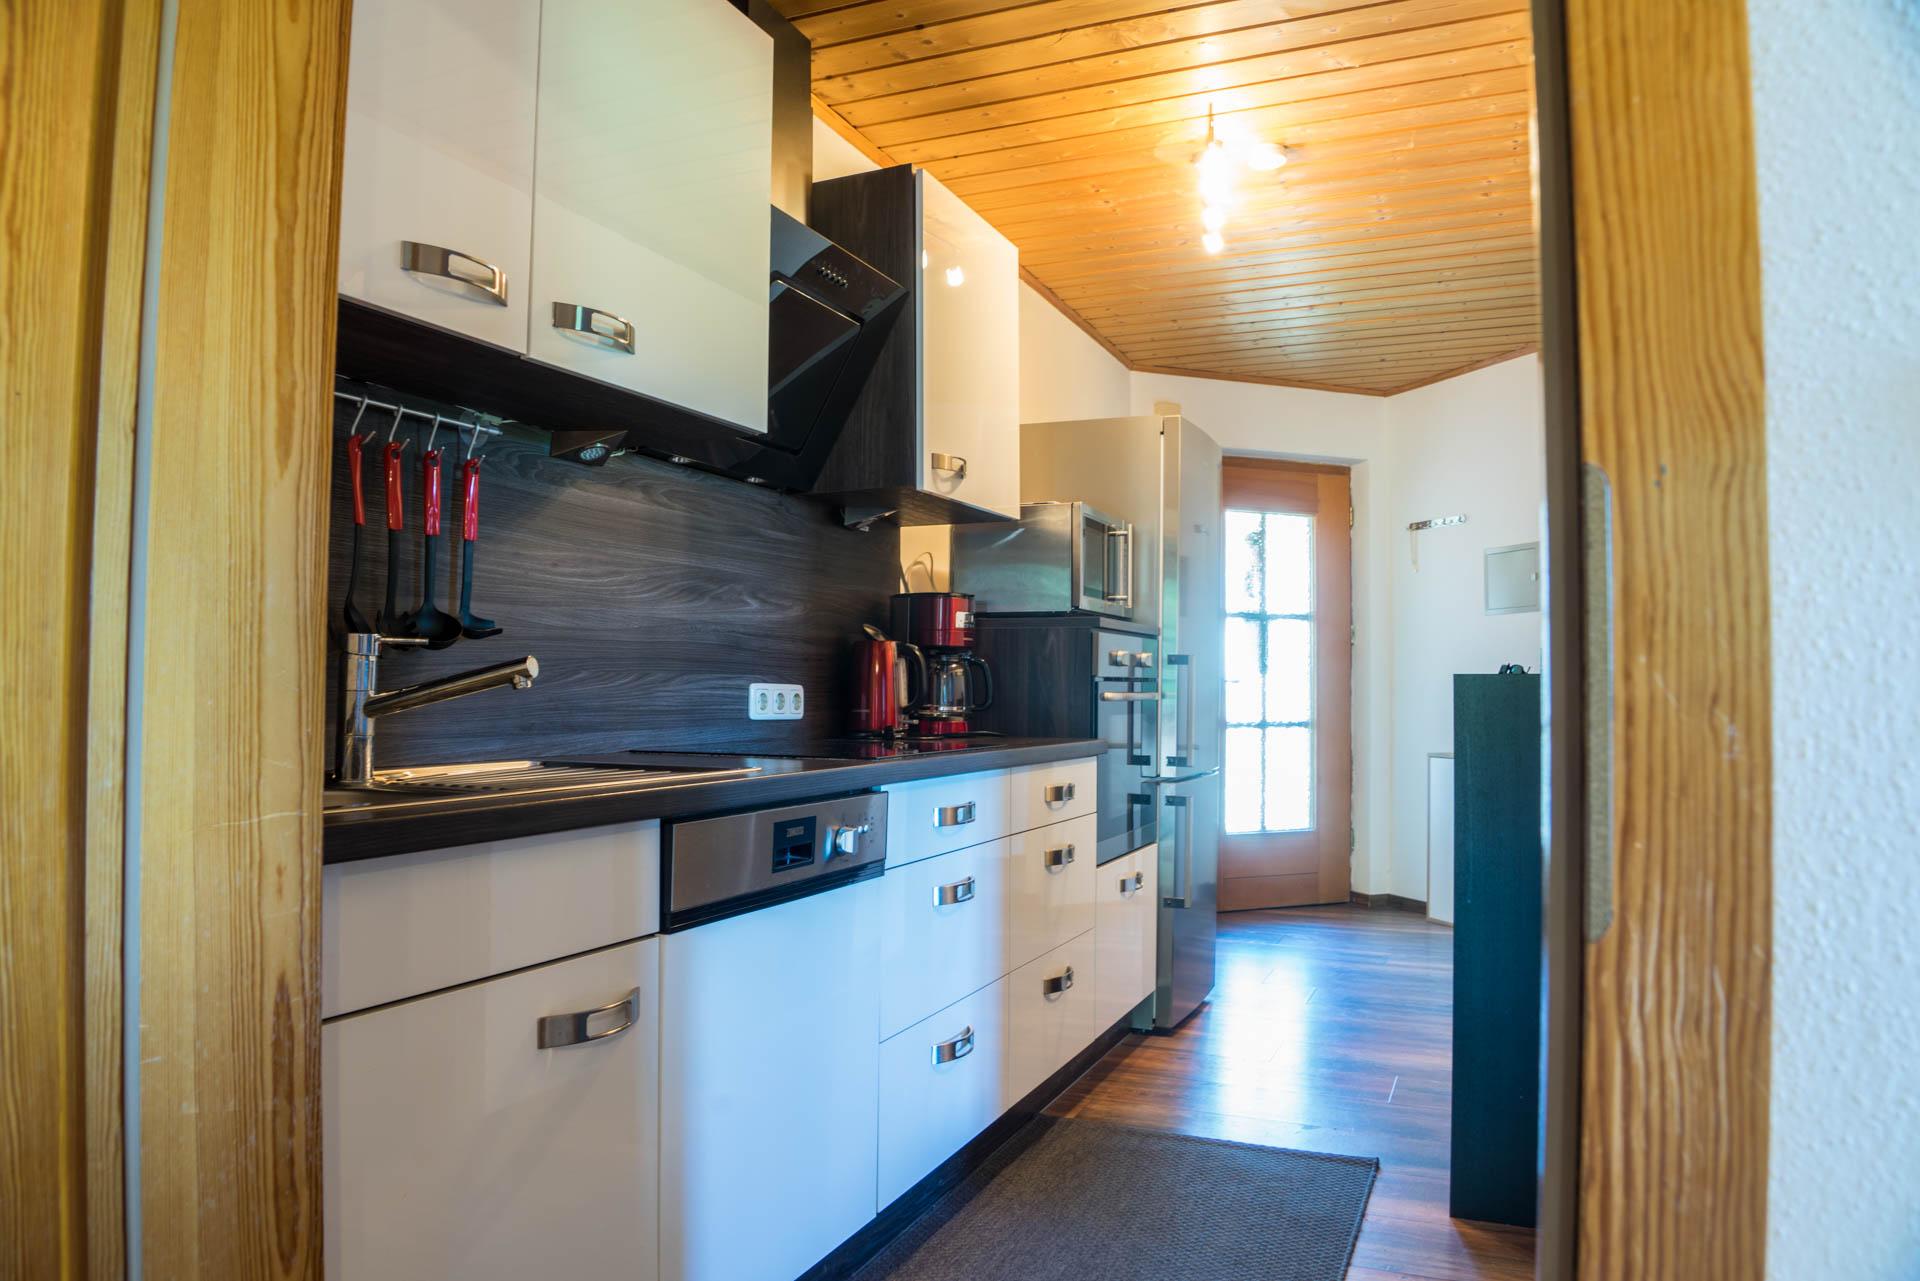 Plně vybavená kuchyň v apartmánu v Bavorském lese